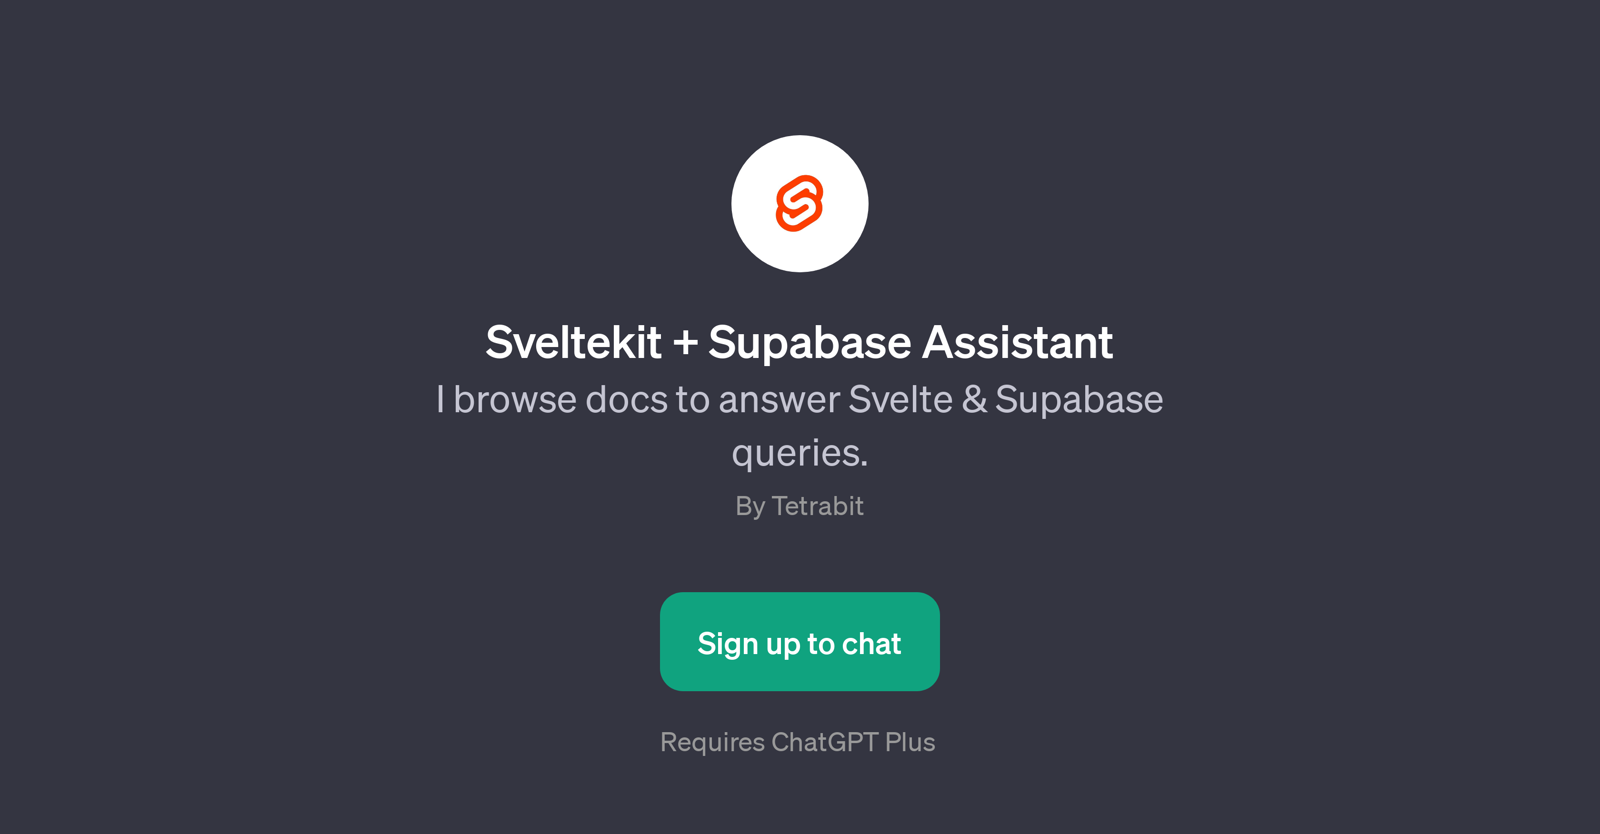 Sveltekit + Supabase Assistant website